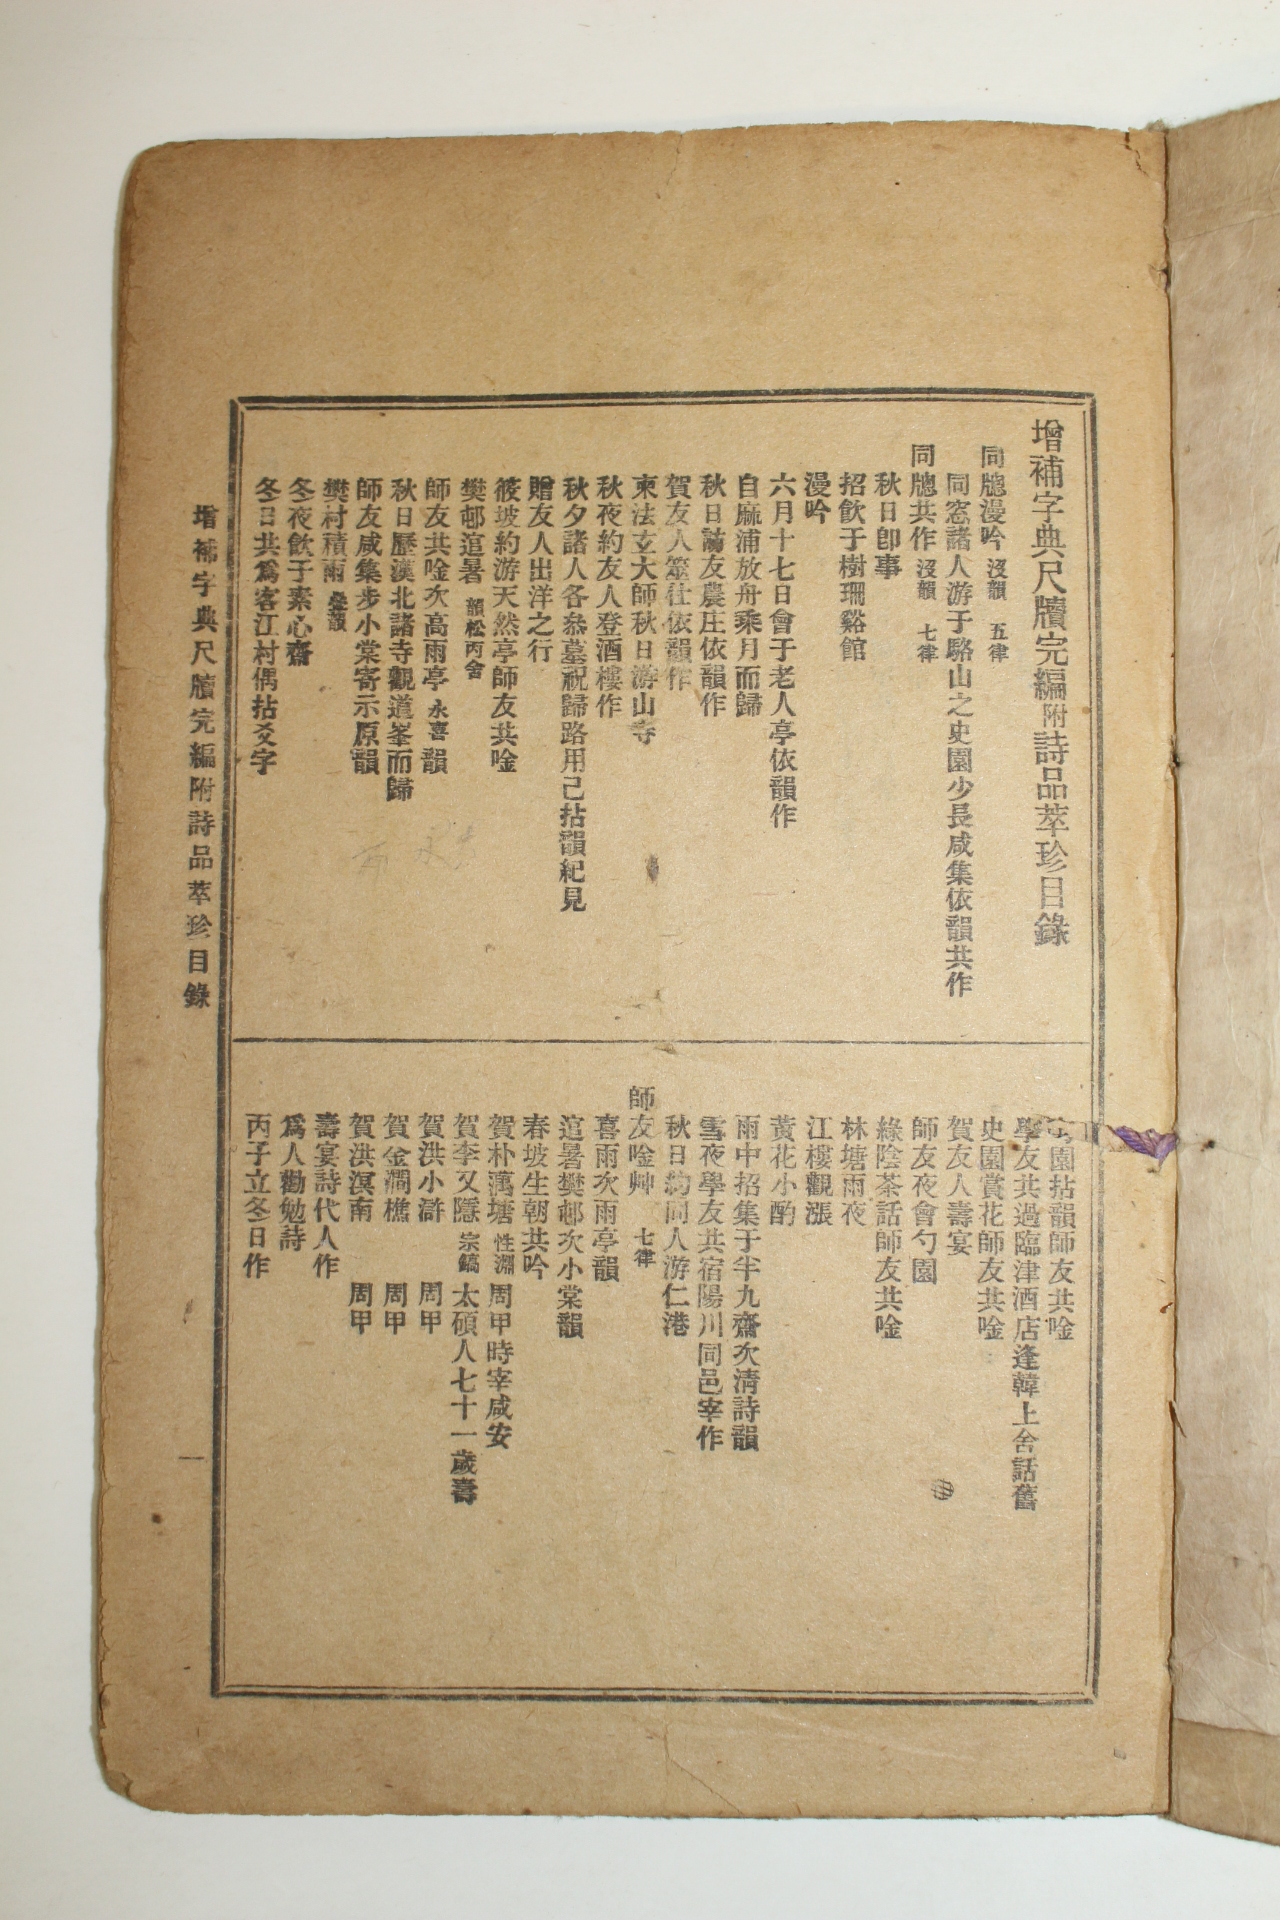 1919년(대정8년) 증보자전척독완편(增補字典尺牘完編)2편 1책